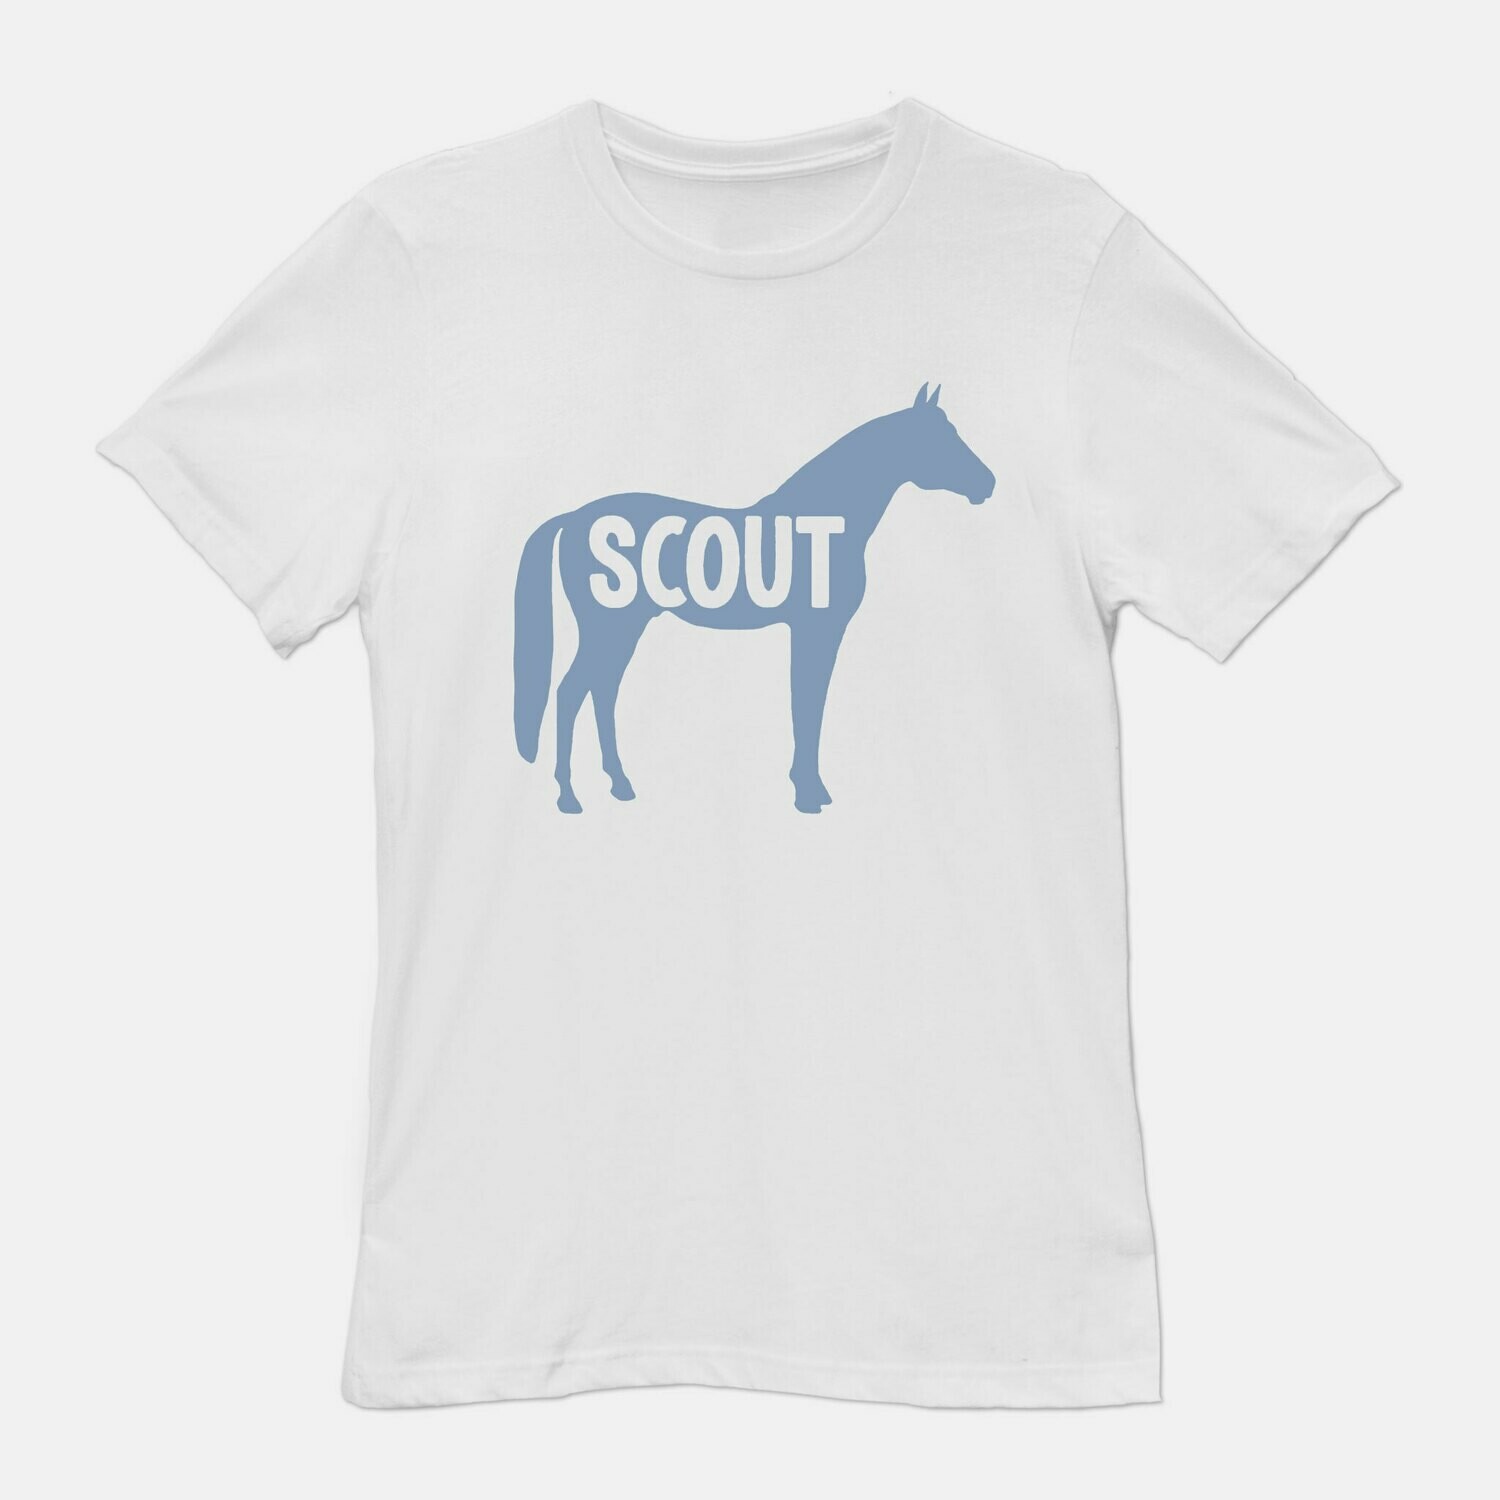 Kids Custom Name Horse White T-shirt tee